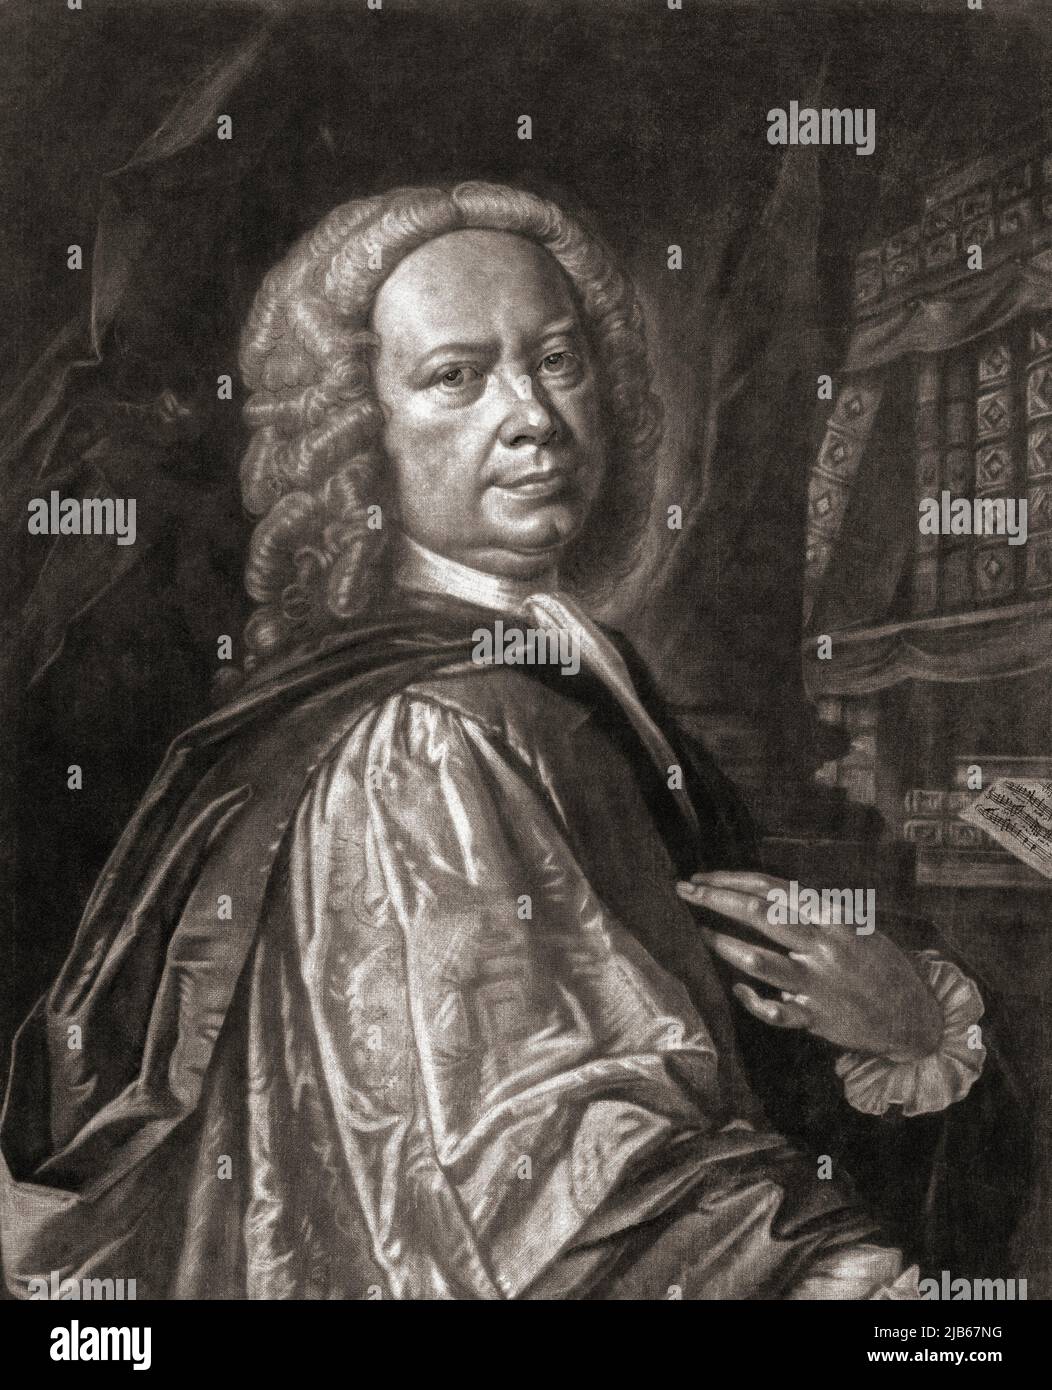 Johann Christoph Pepusch, 1667 - 1752, aka John Christopher Pepusch and Dr Pepusch. German born musician, composer, music theoretician and teacher. Stock Photo